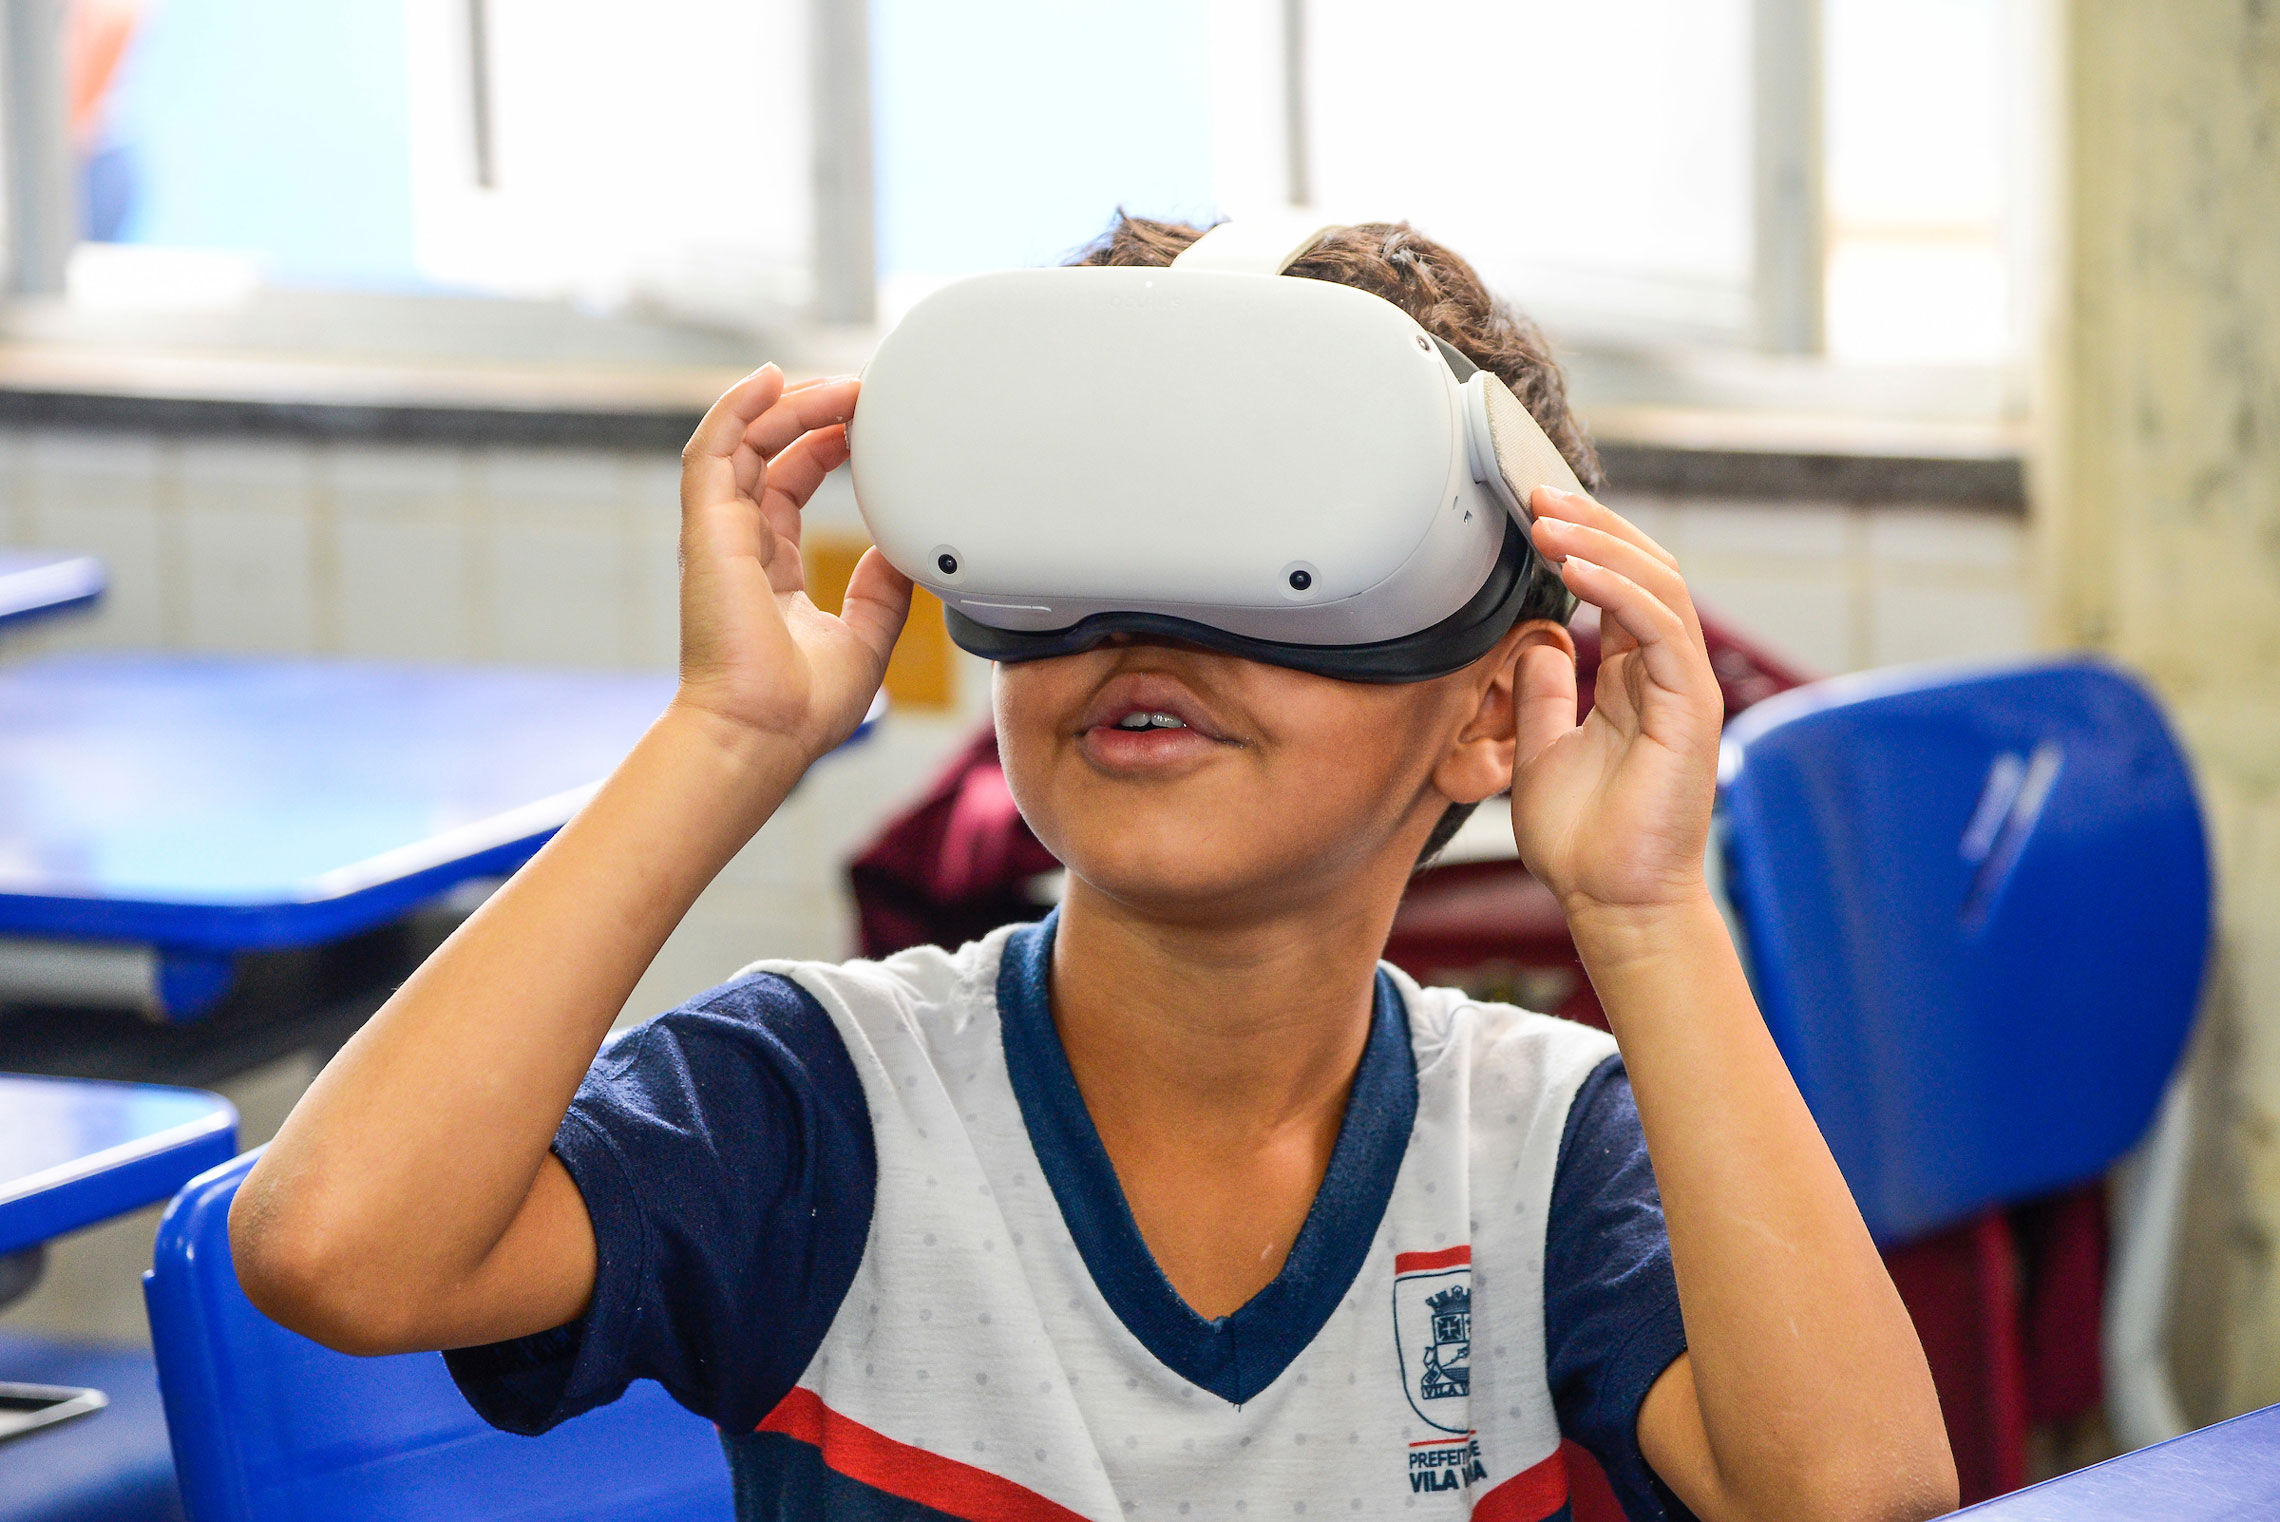 Criança na escola com óculos de realidade aumentada